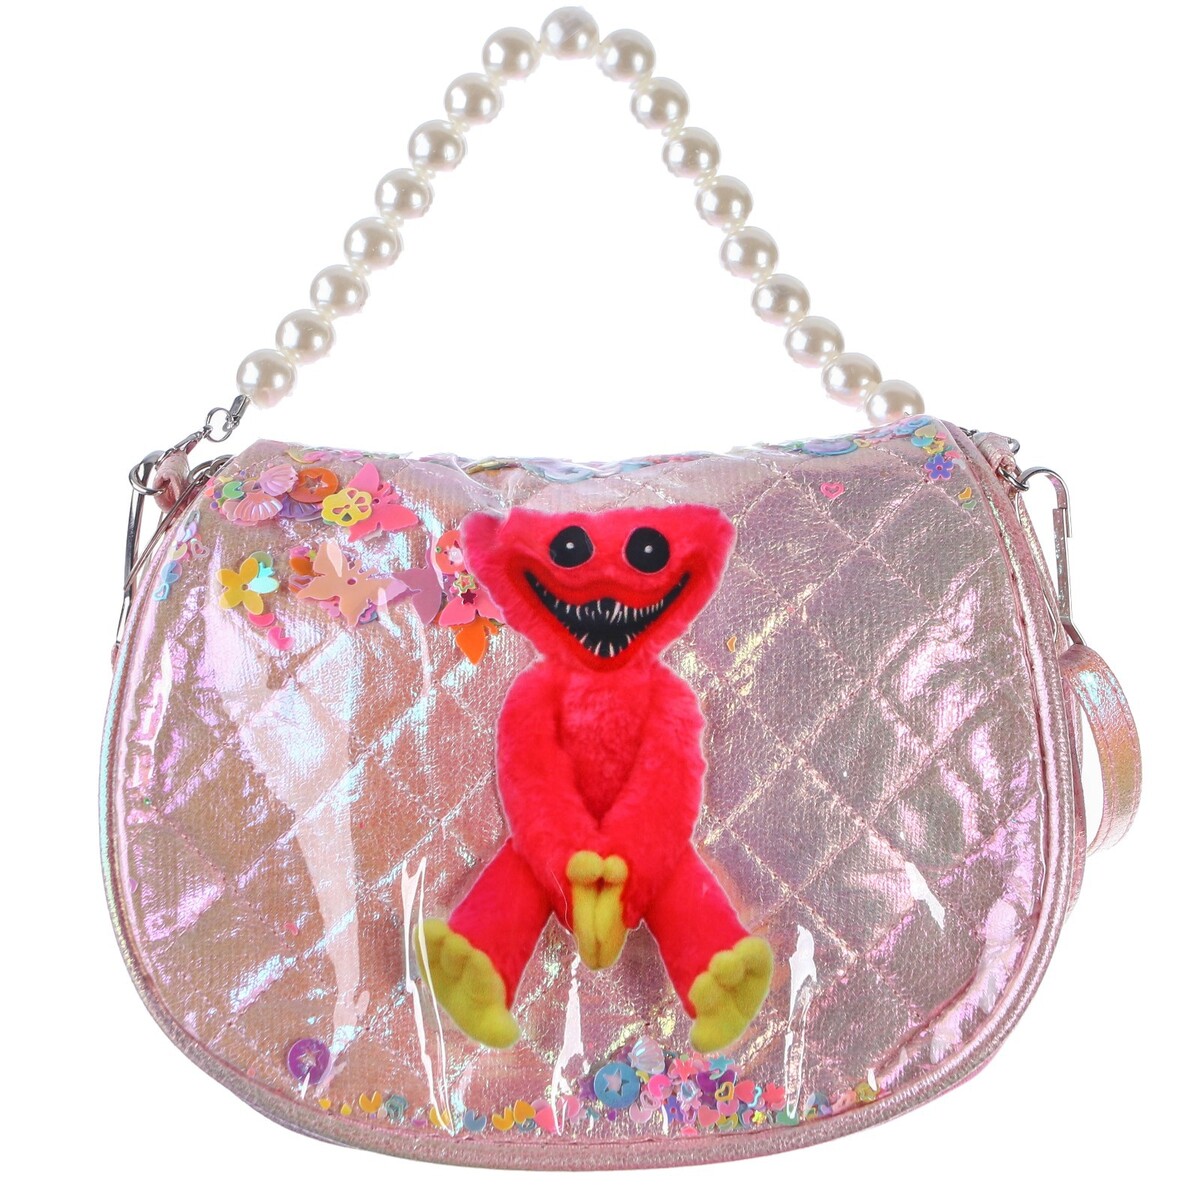 Сумка детская на клапане, 6х12х16 см, регулируемый ремень, розовый сумка багет отдел на молнии регулируемый ремень пудра